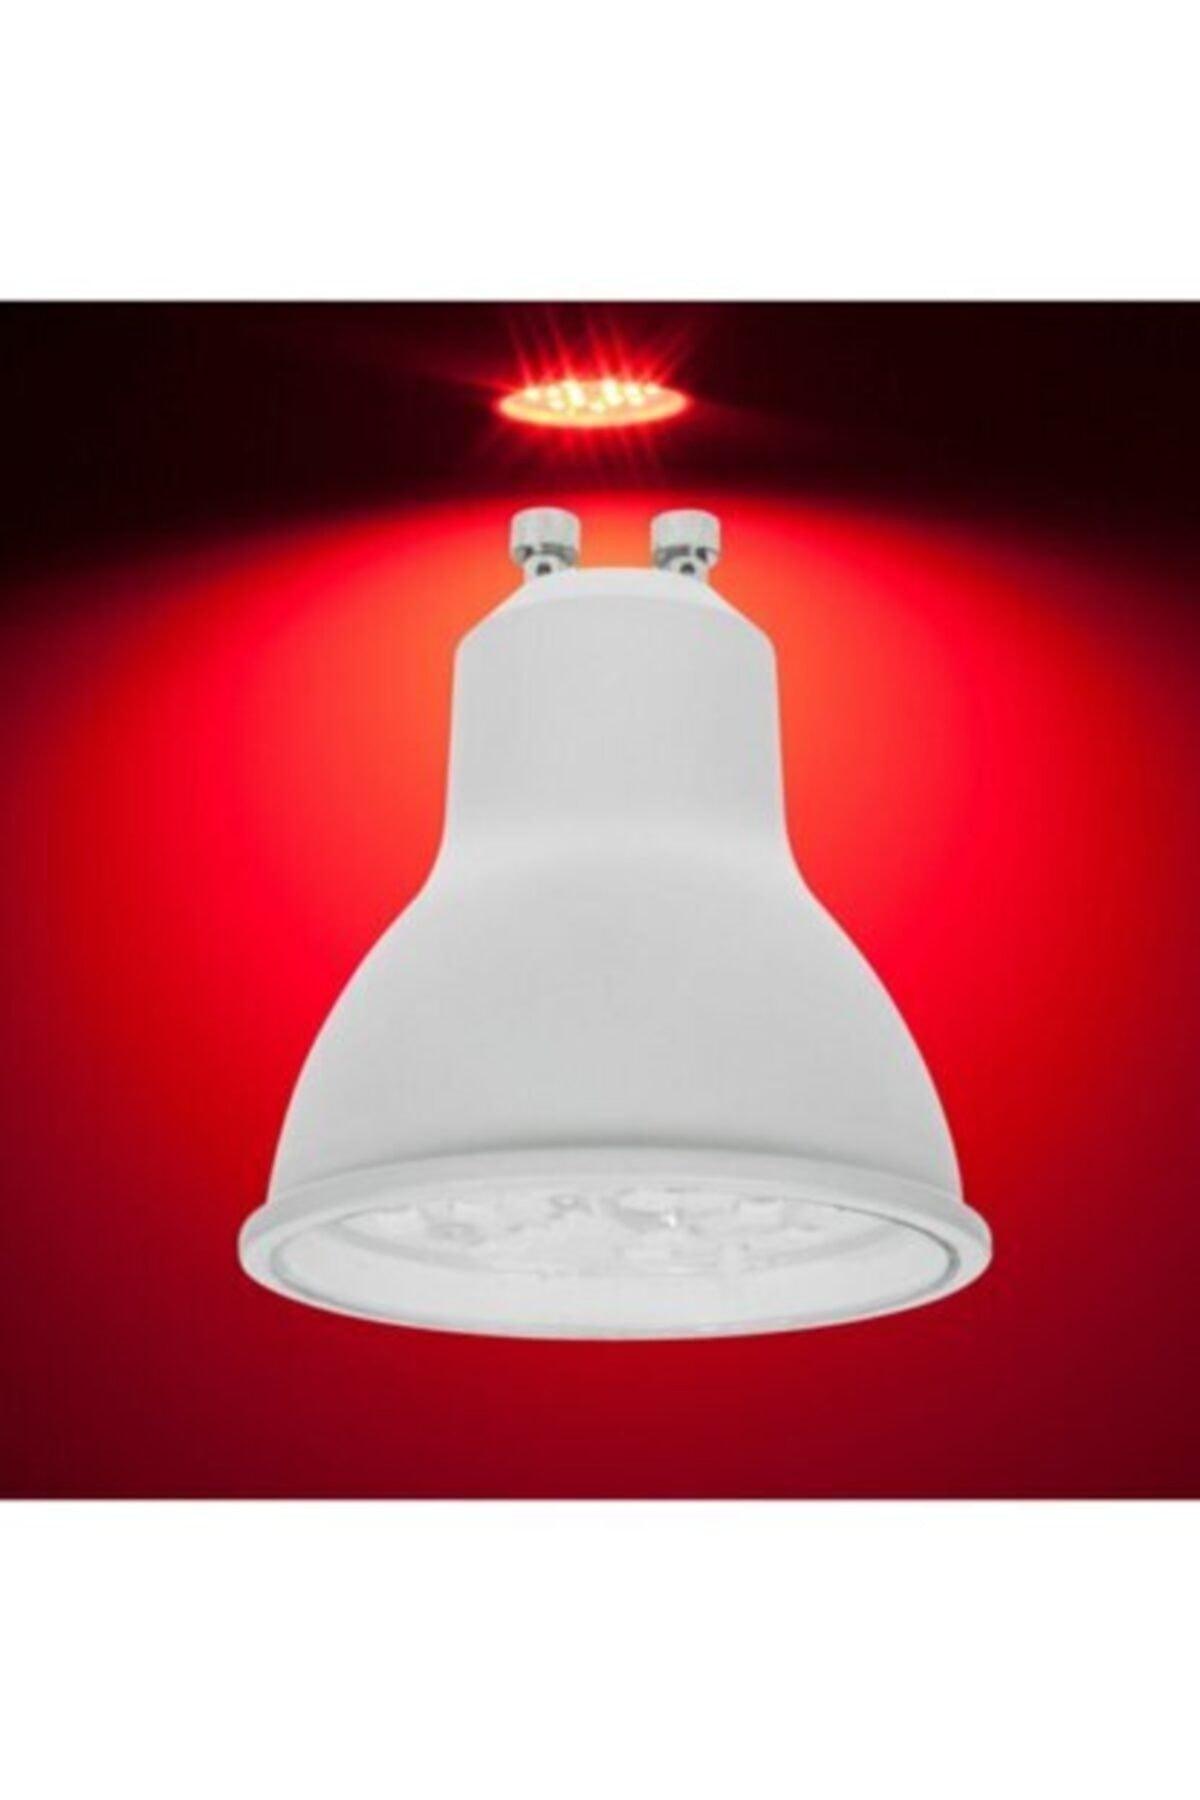 Gu10 Lampholder 7 V. Bulb - Red Light - 10 pcs